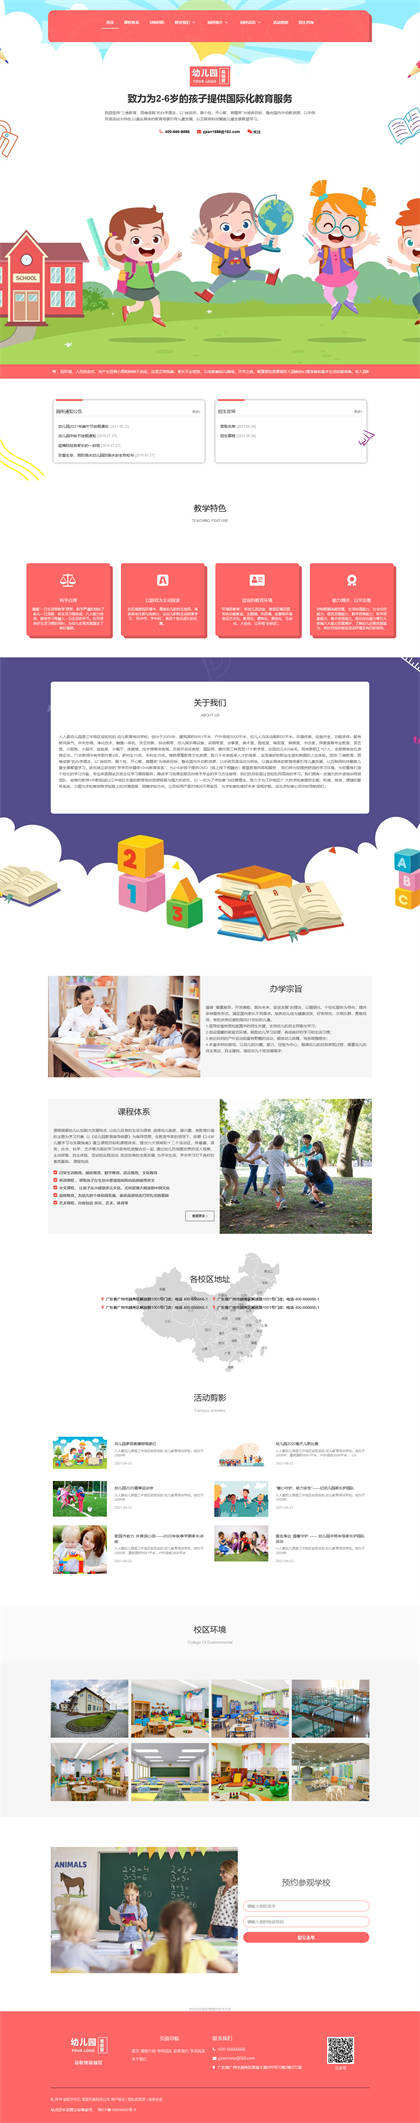 幼儿园-托儿所-早教中心-幼儿培训-早教机构网站模板网站模板预览图片